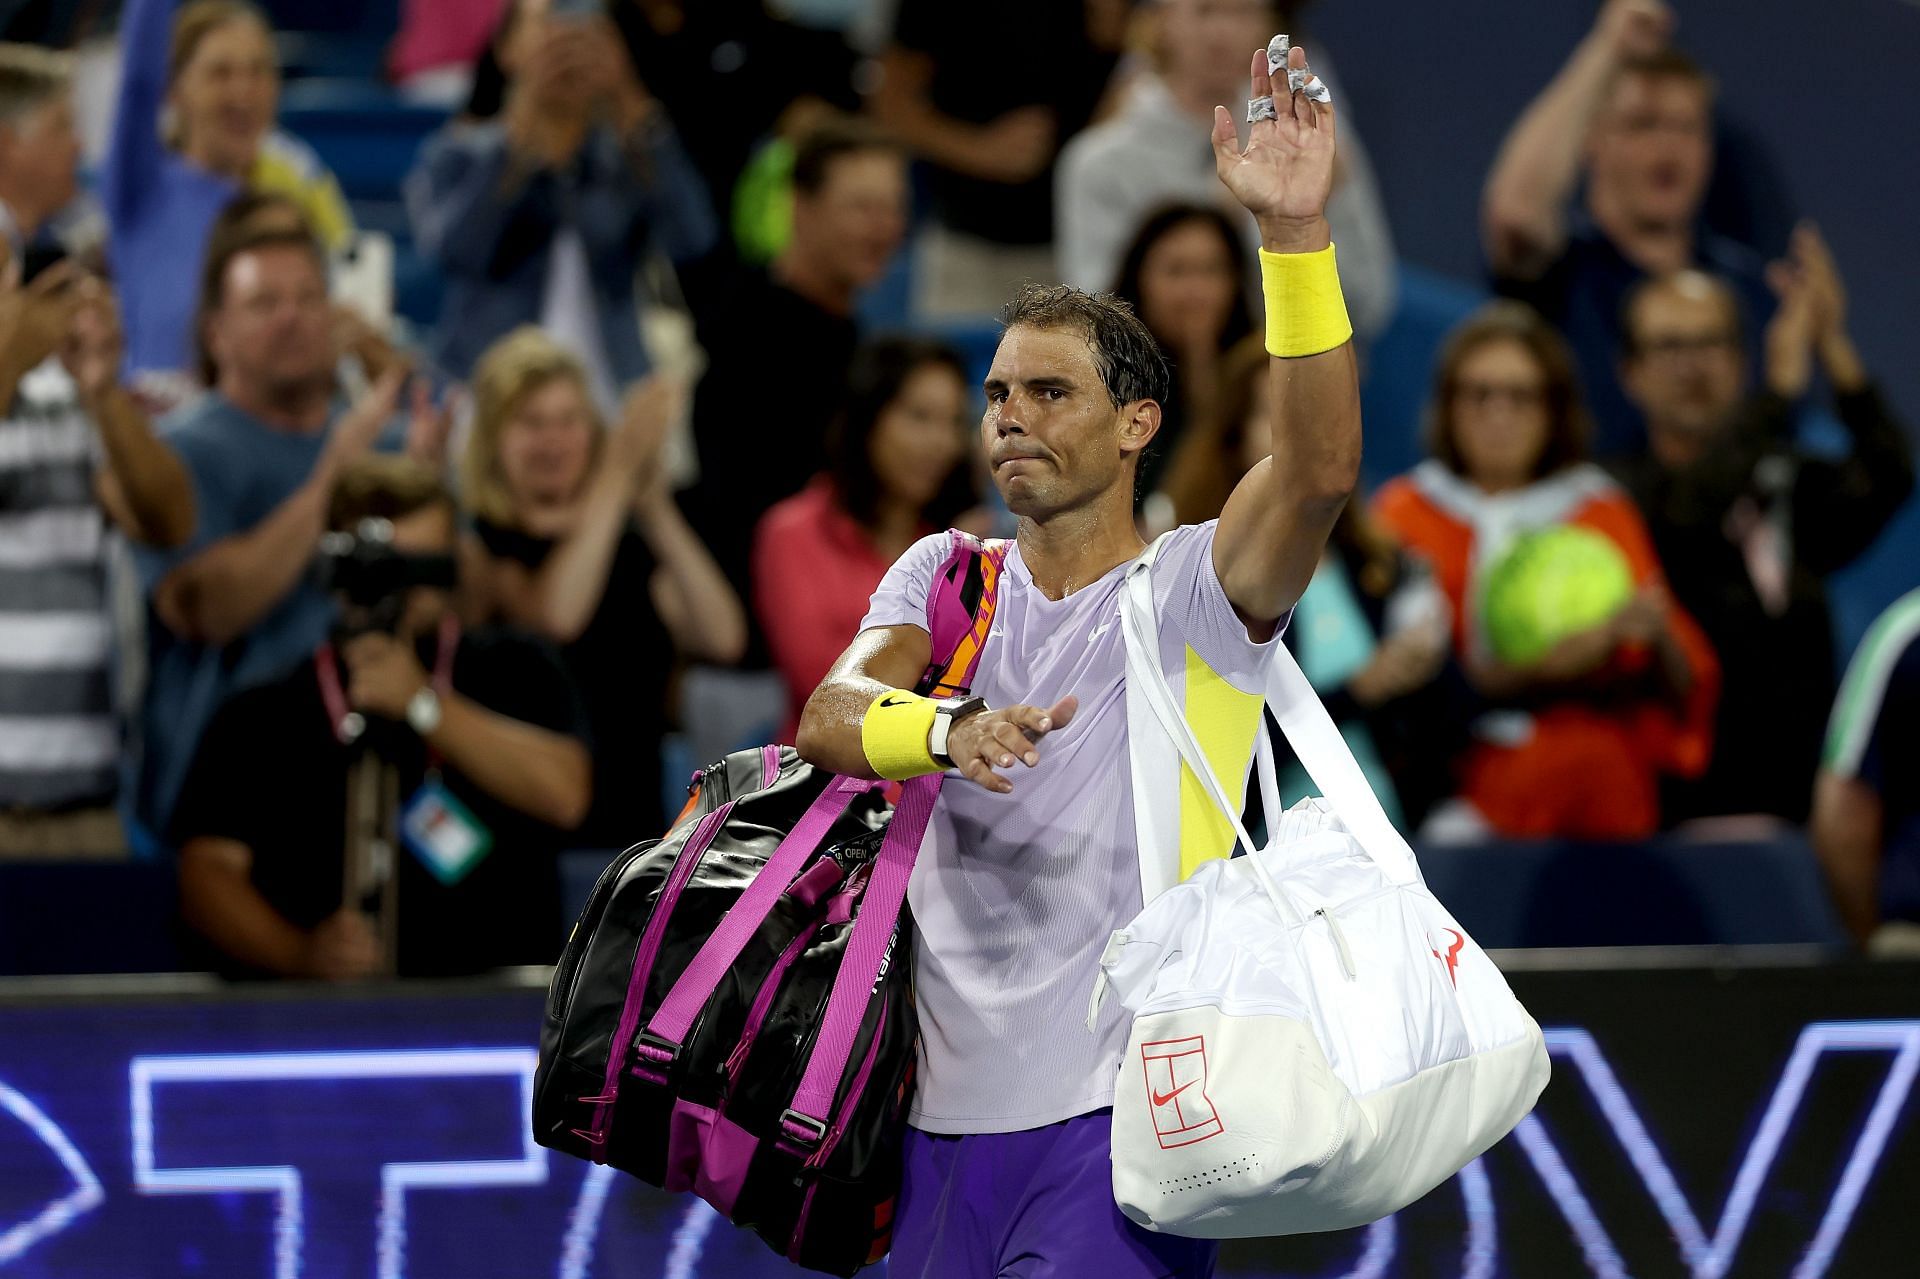 Rafael Nadal greets the crowd at Cincinnati Open.